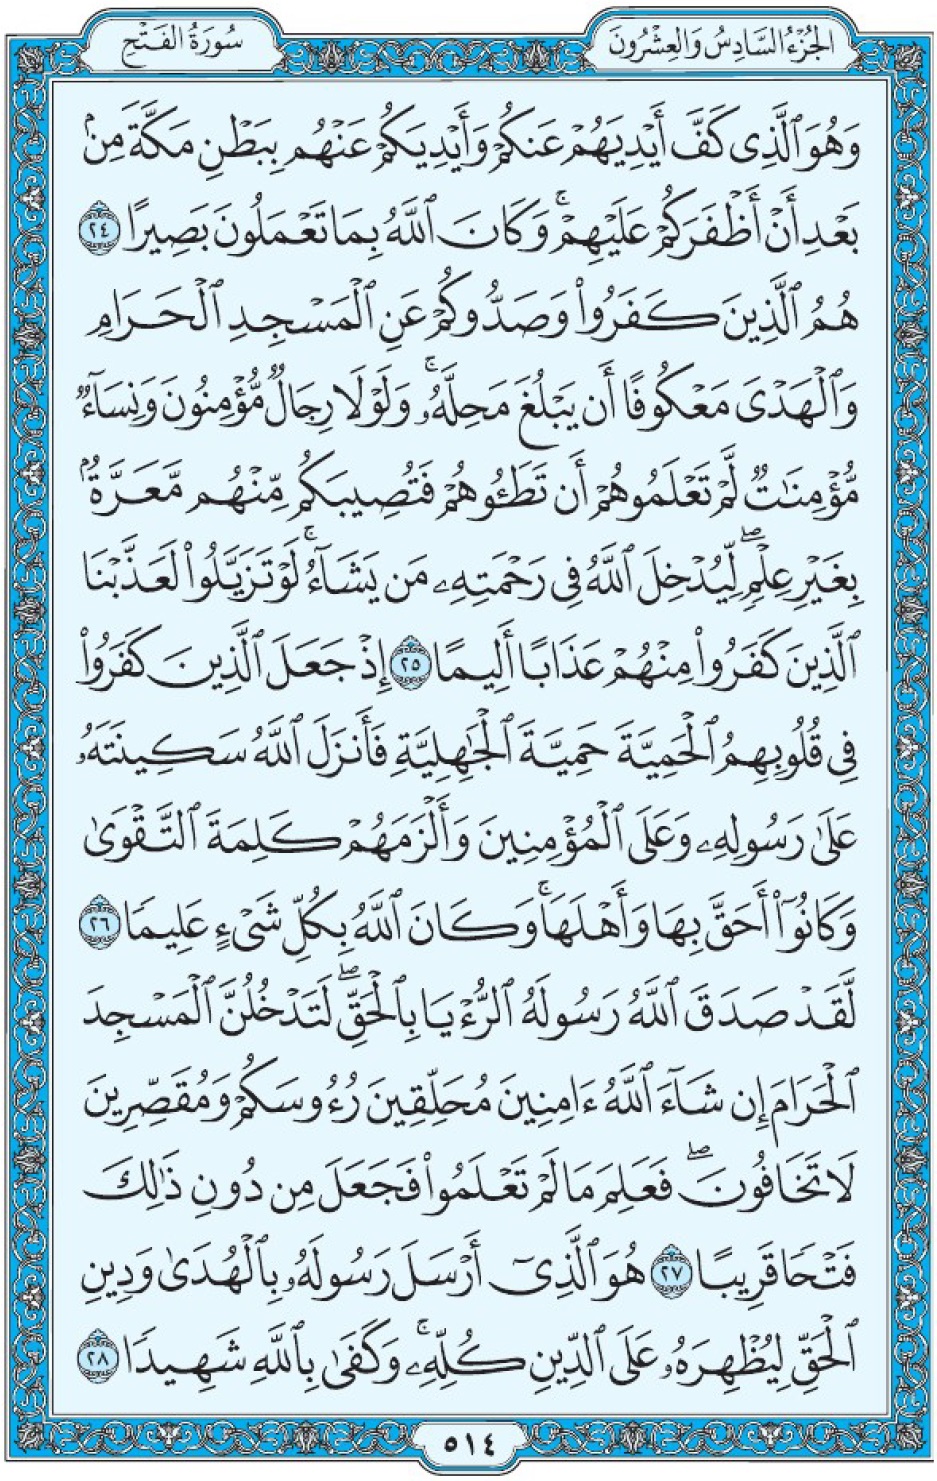 Коран Мединский мусхаф страница 514, сура 48 аль-Фатх, аят 24-28